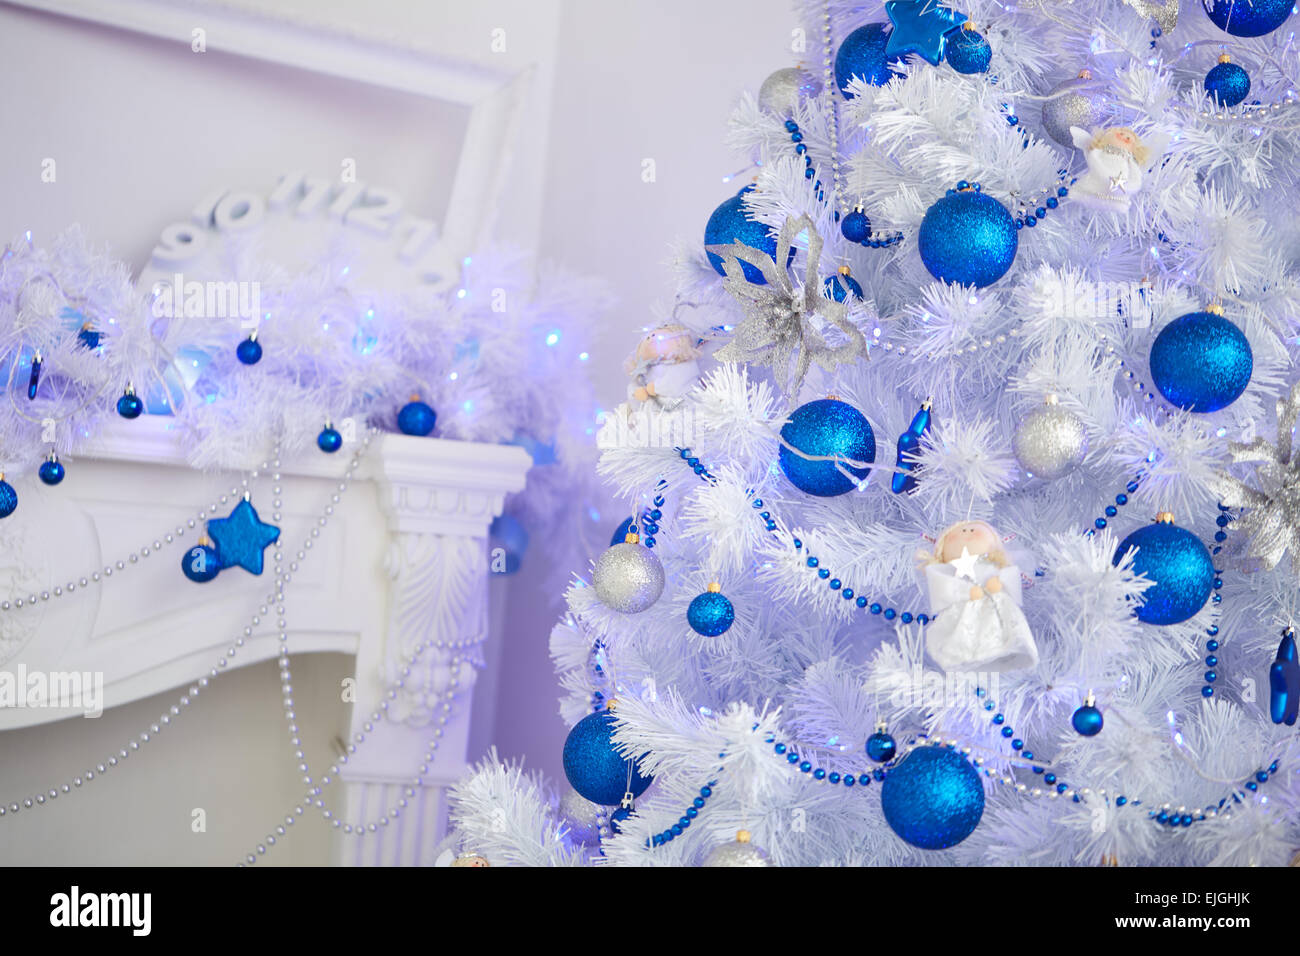 Weihnachtsbaum, Kamin, Uhren, Spielzeug, Geschenke in einem weißen Raum Stockfoto